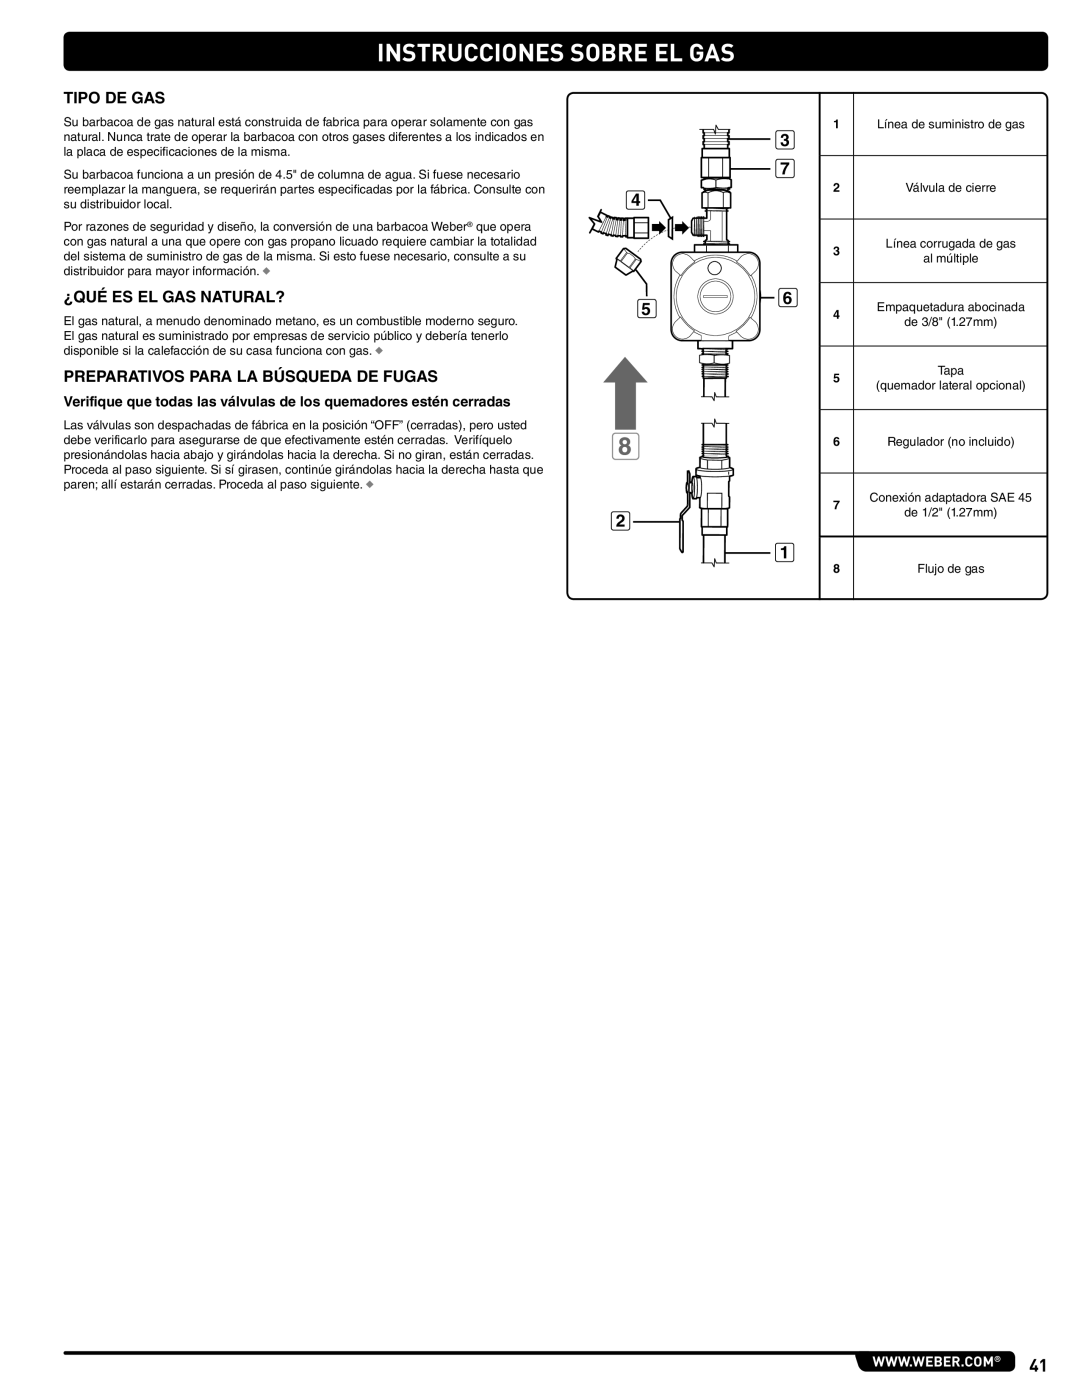 Weber 56576 manual Instrucciones Sobre El Gas, Tipo De Gas, ¿Qué Es El Gas Natural?, Preparativos Para La Búsqueda De Fugas 